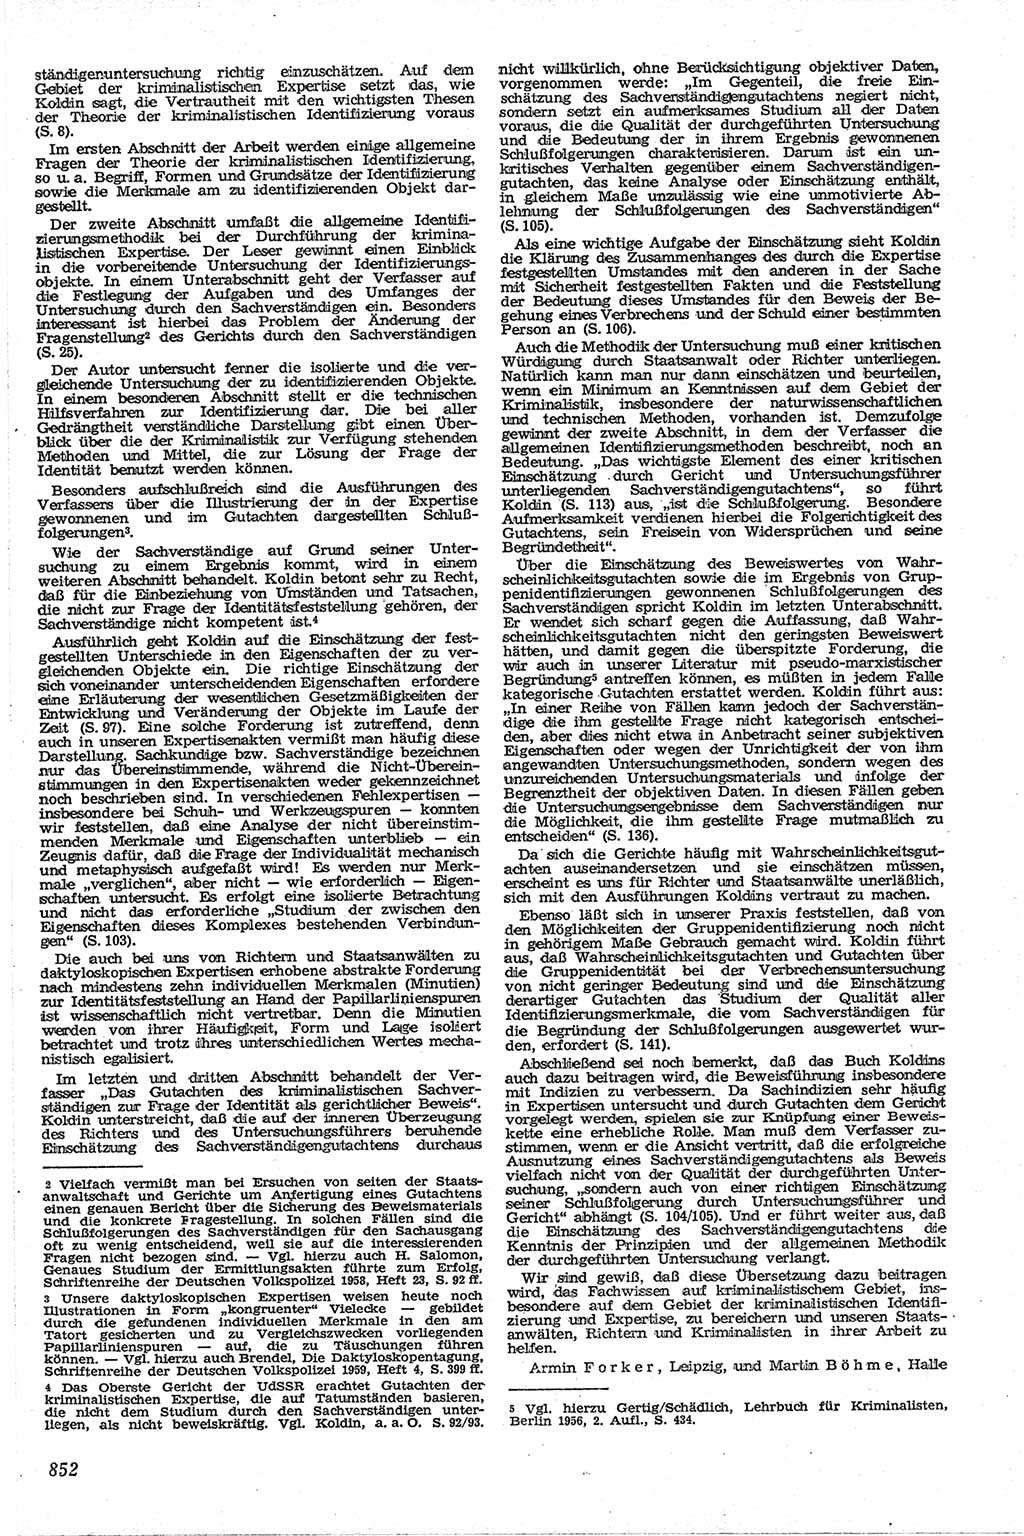 Neue Justiz (NJ), Zeitschrift für Recht und Rechtswissenschaft [Deutsche Demokratische Republik (DDR)], 13. Jahrgang 1959, Seite 852 (NJ DDR 1959, S. 852)